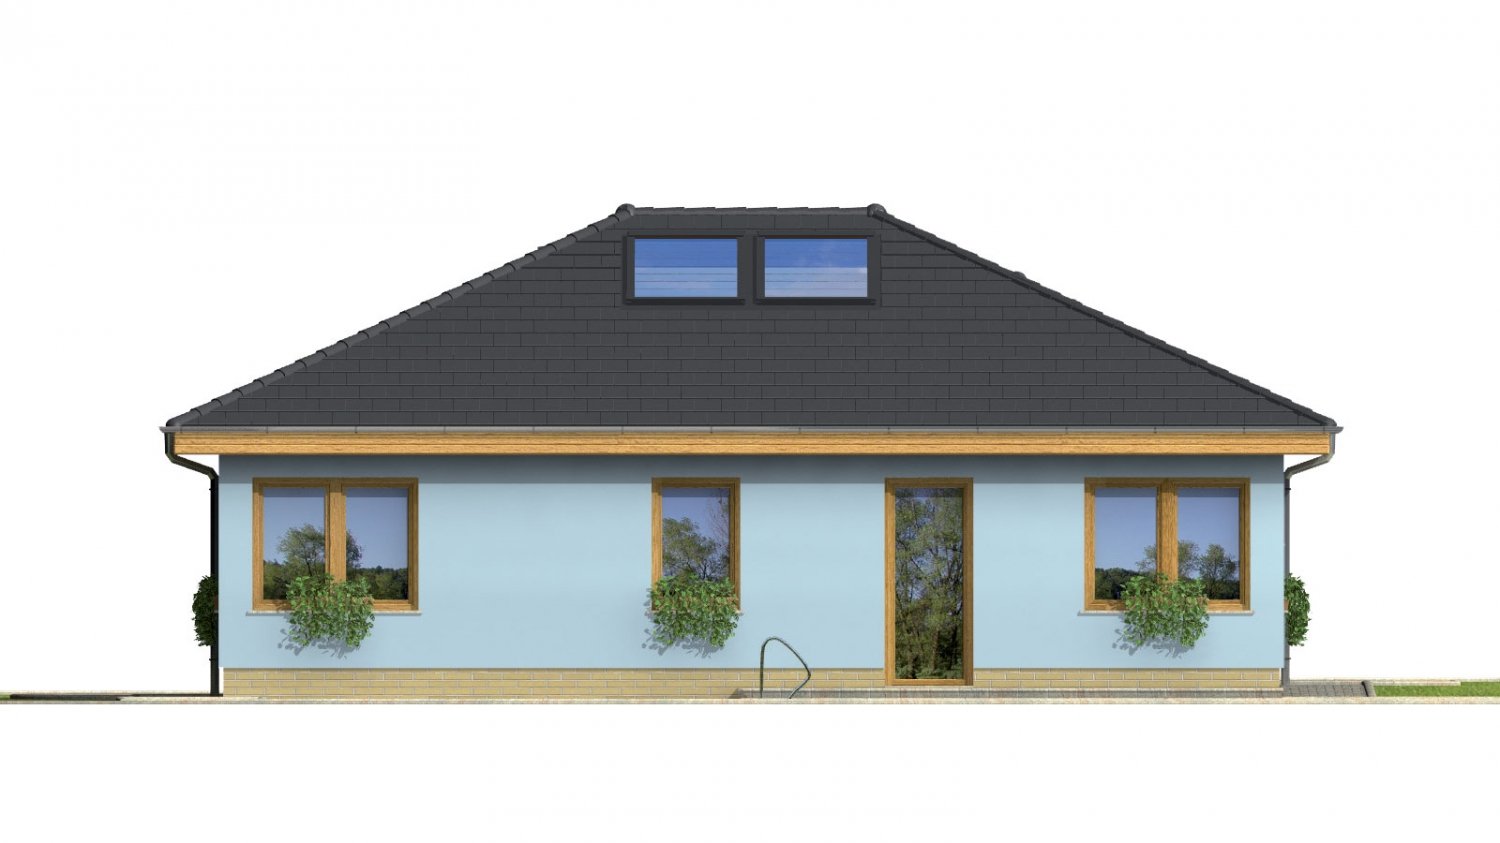 Pohľad 2. - Projekt přízemního rodinného domu s garáží, valbovou střechou a terasou.